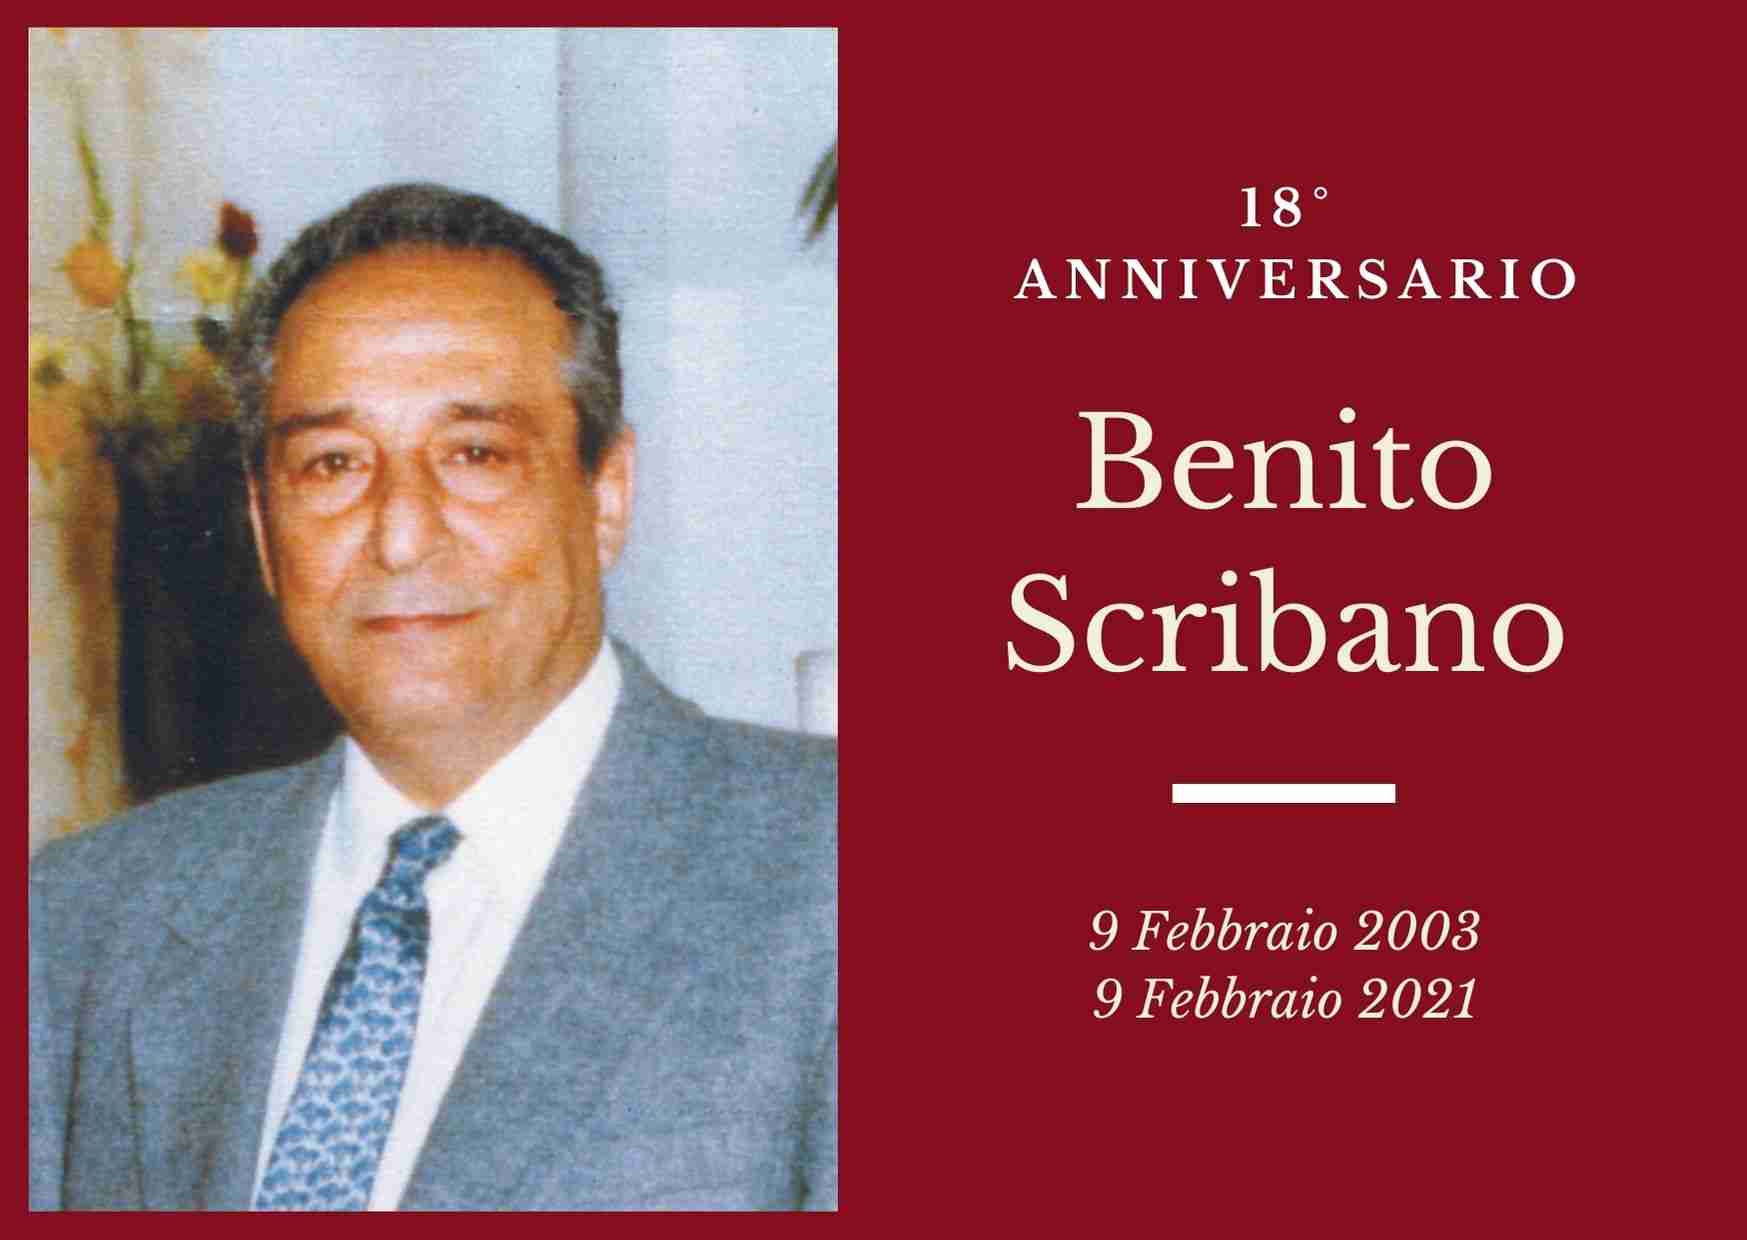 Necrologio: ricorre oggi il 18° anniversario di Benito Scribano